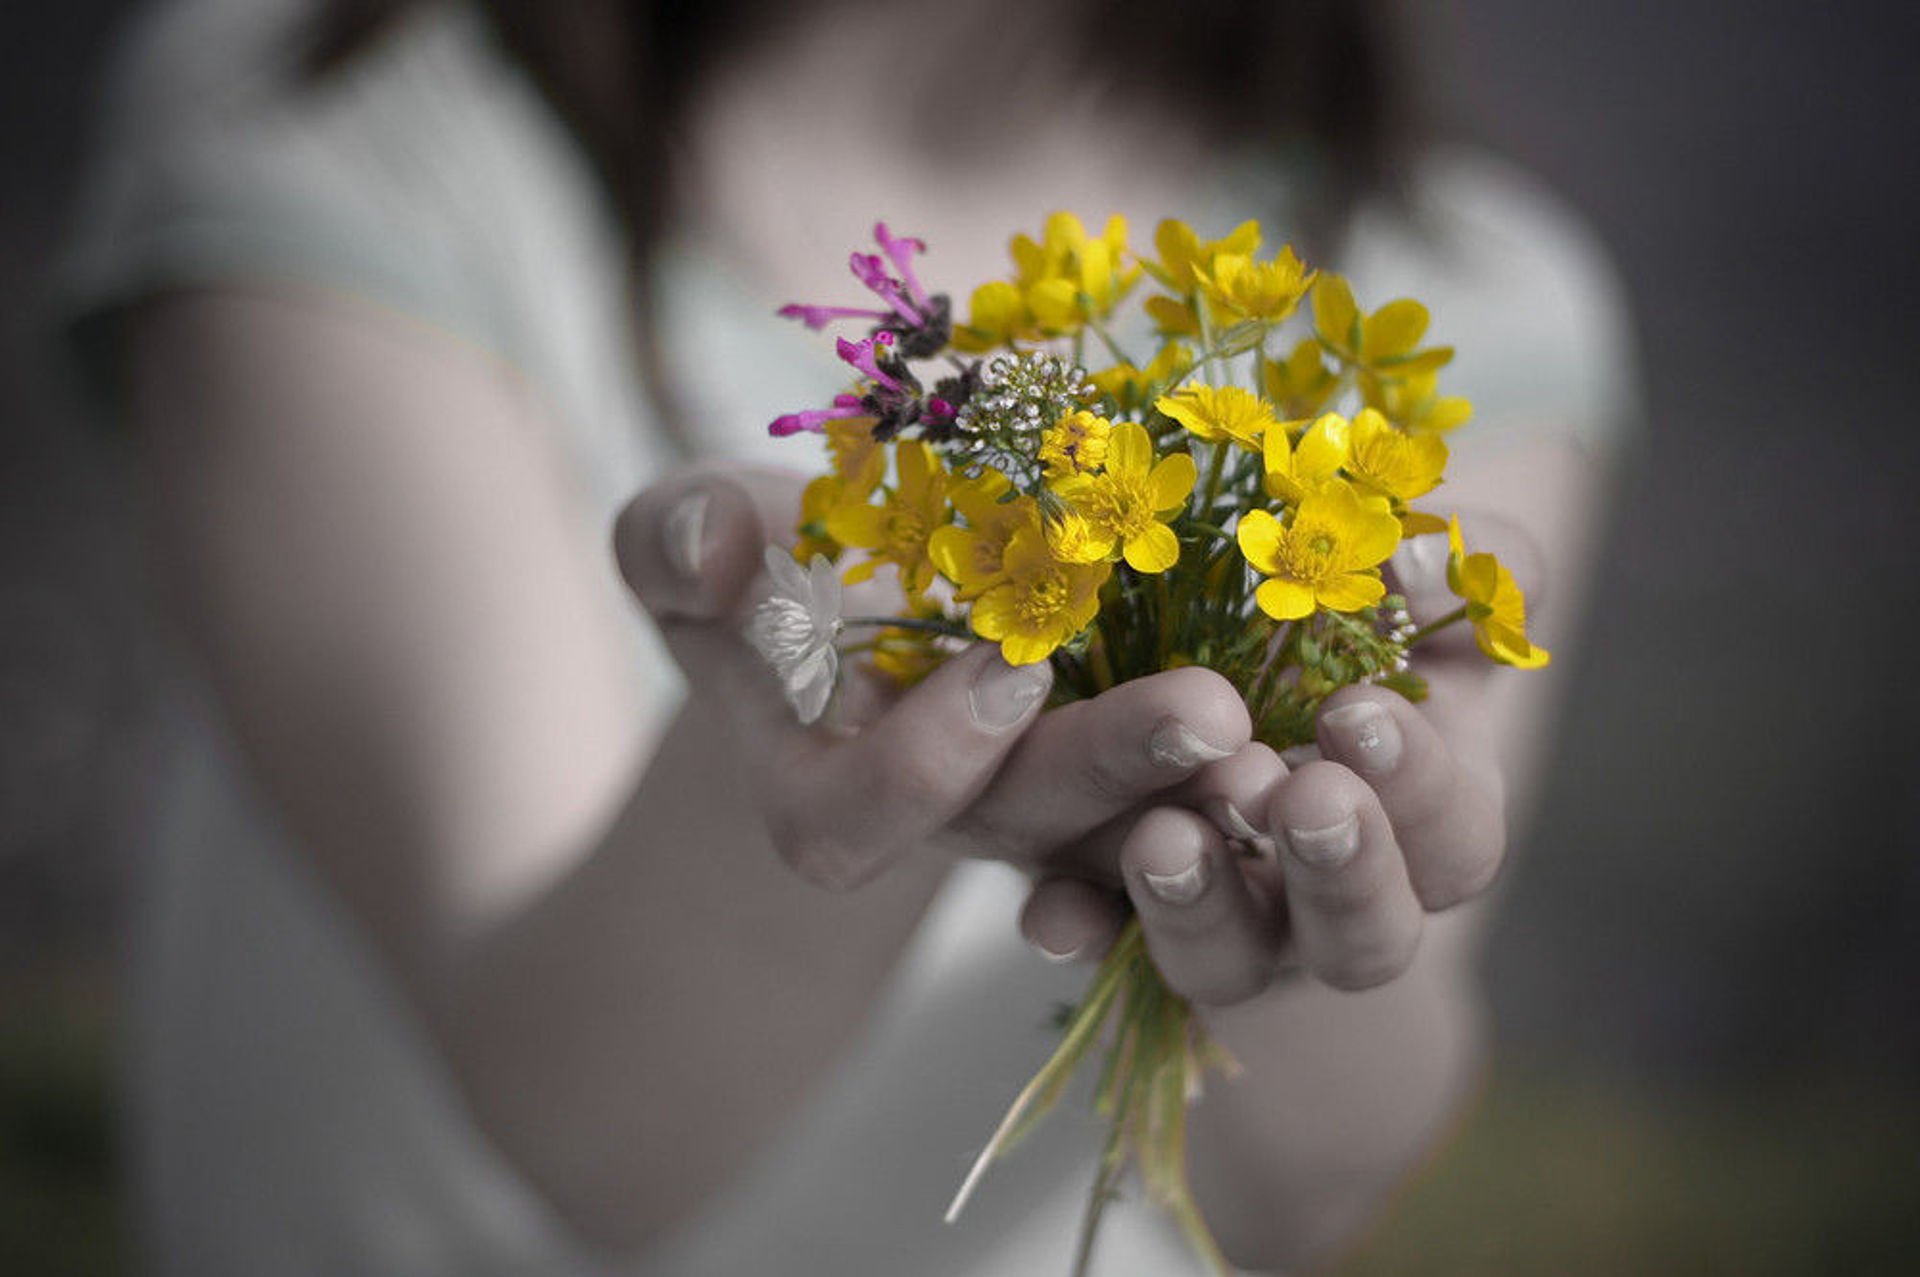 Жить счастьем близкого. Цветы в ладонях. Цветы радости. Цветы радости жизни. Счастье в руках.